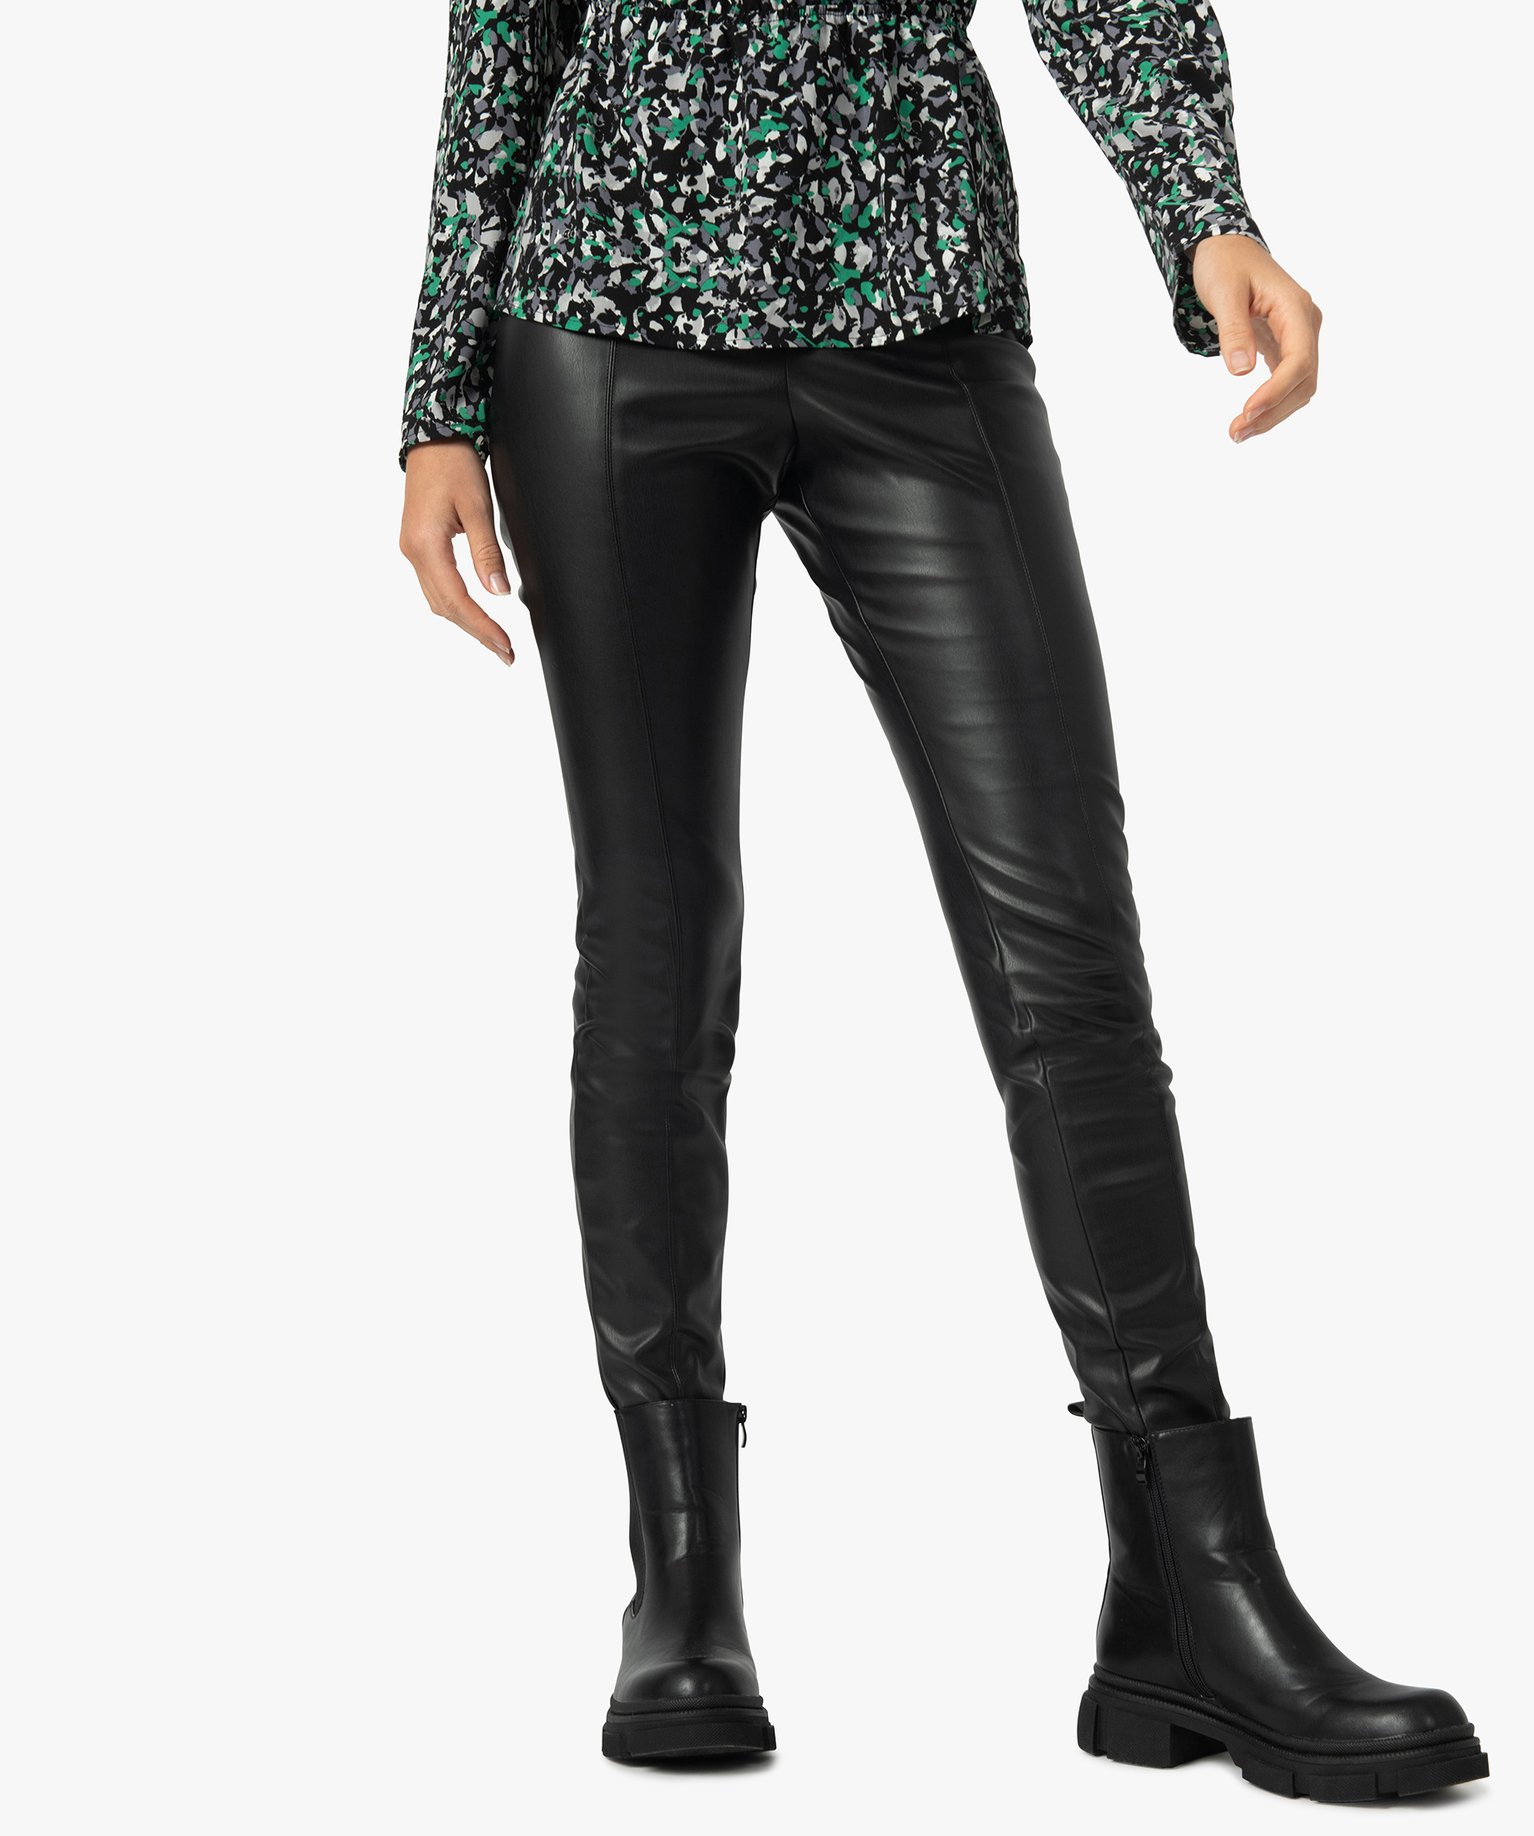 pantalon femme taille haute en synthetique esprit rock noir pantalons